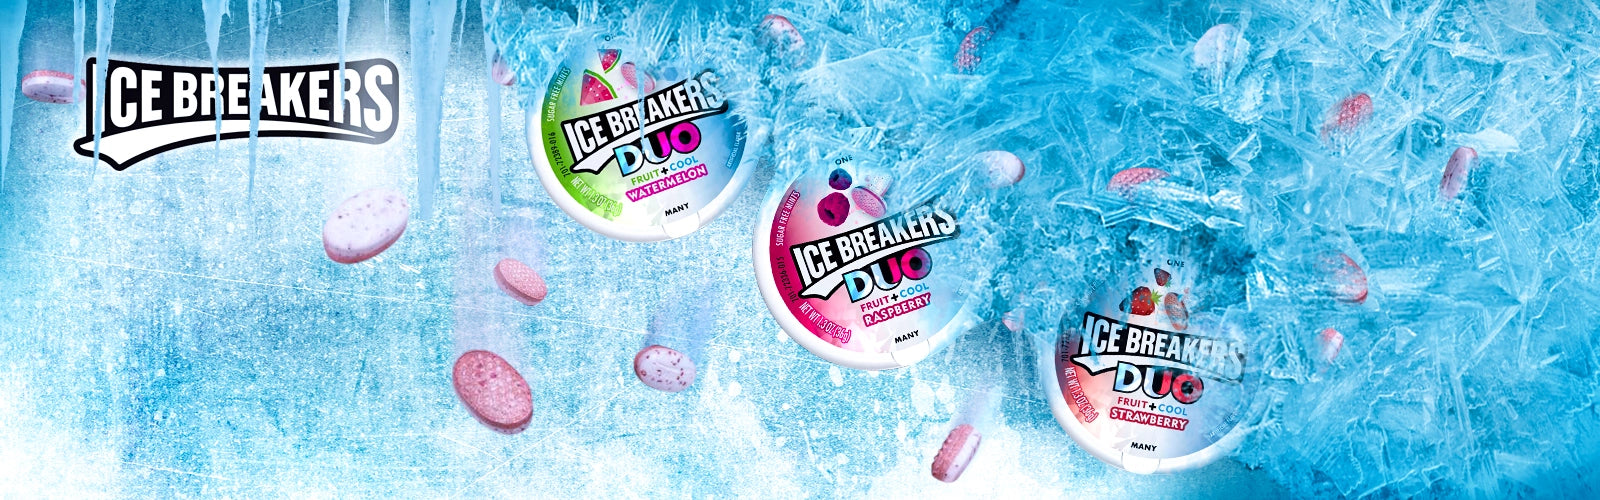 Ice breakers banner